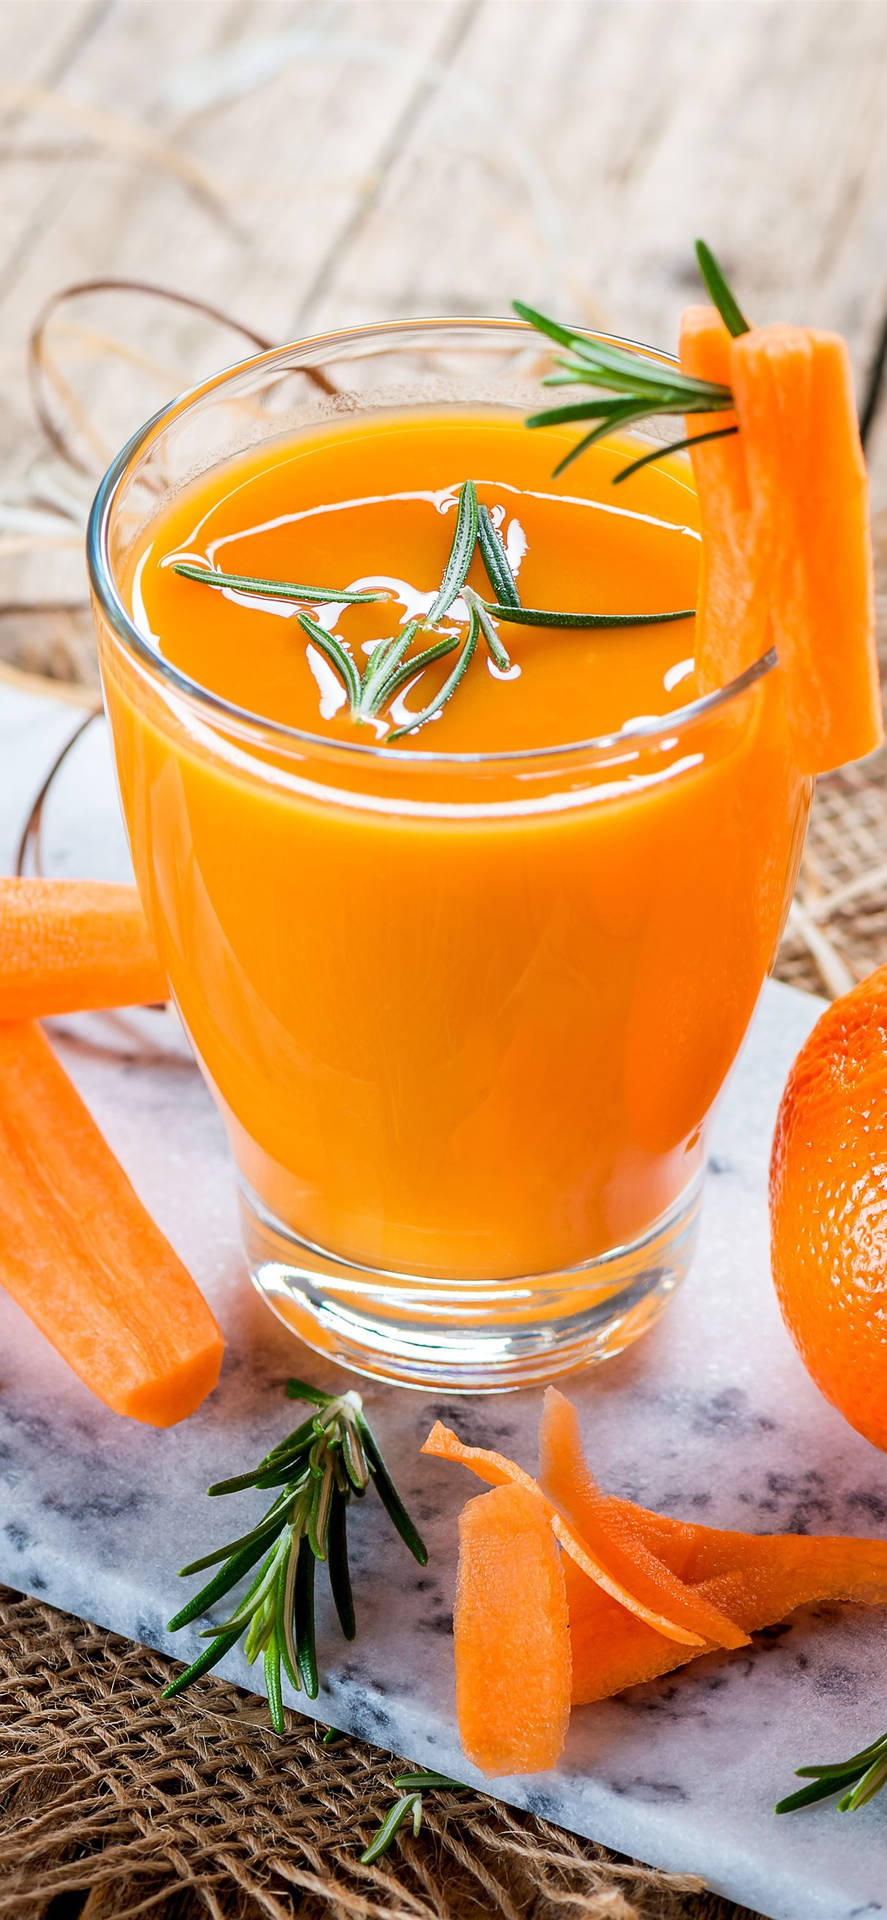 Fresh Orange Juice With Rosemary Background